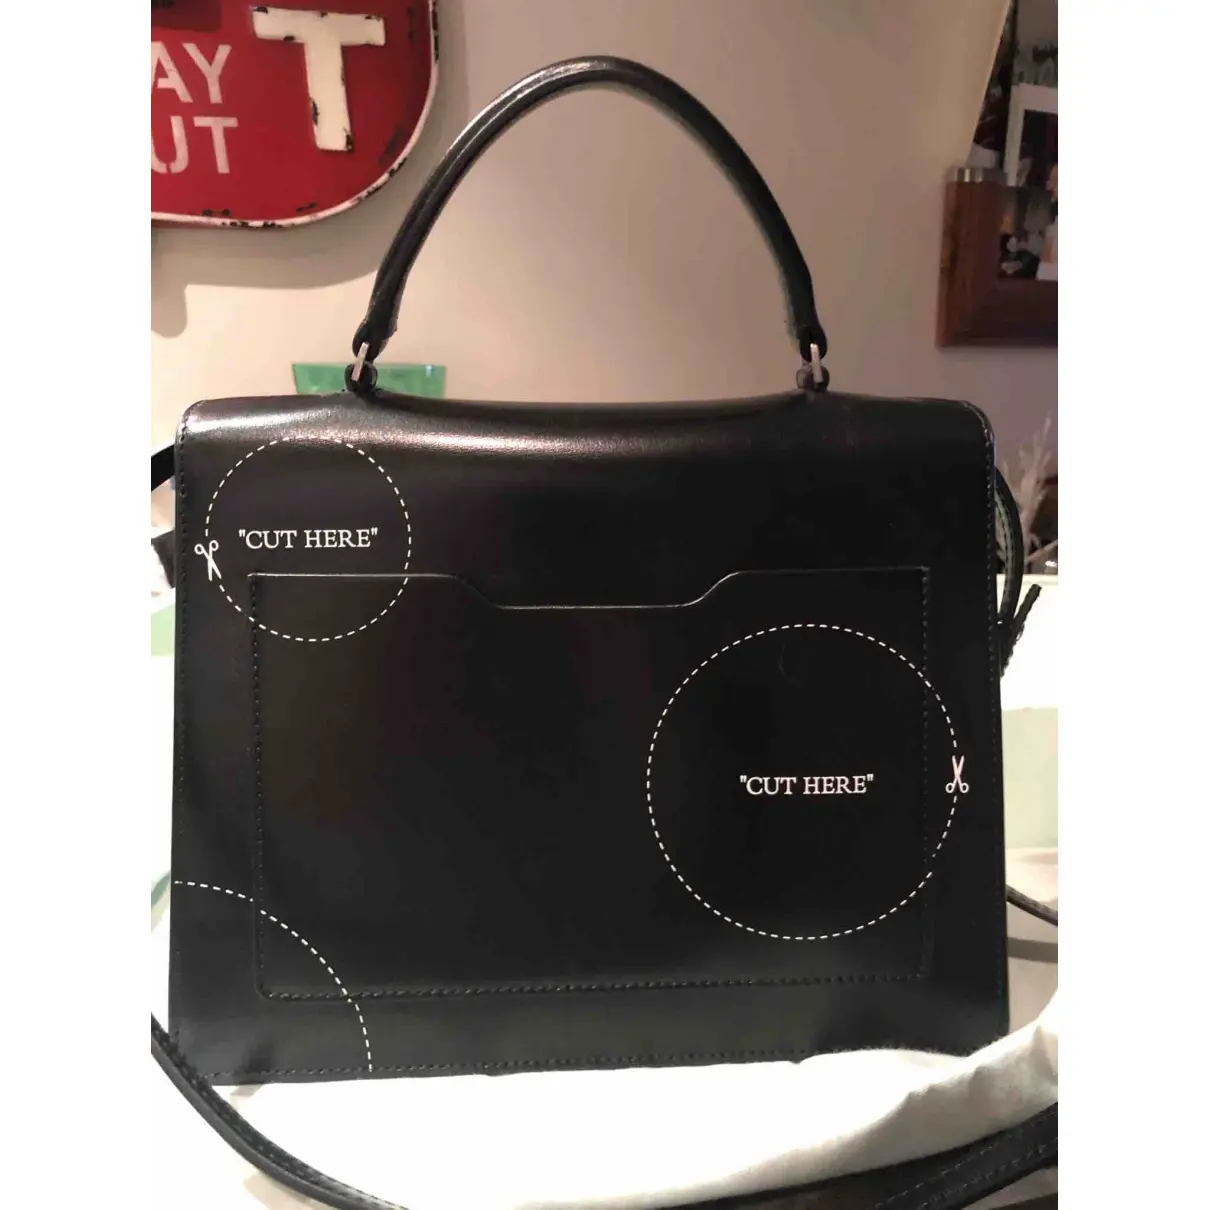 Buy Off-White Meteor 2.8 Jitney leather handbag online